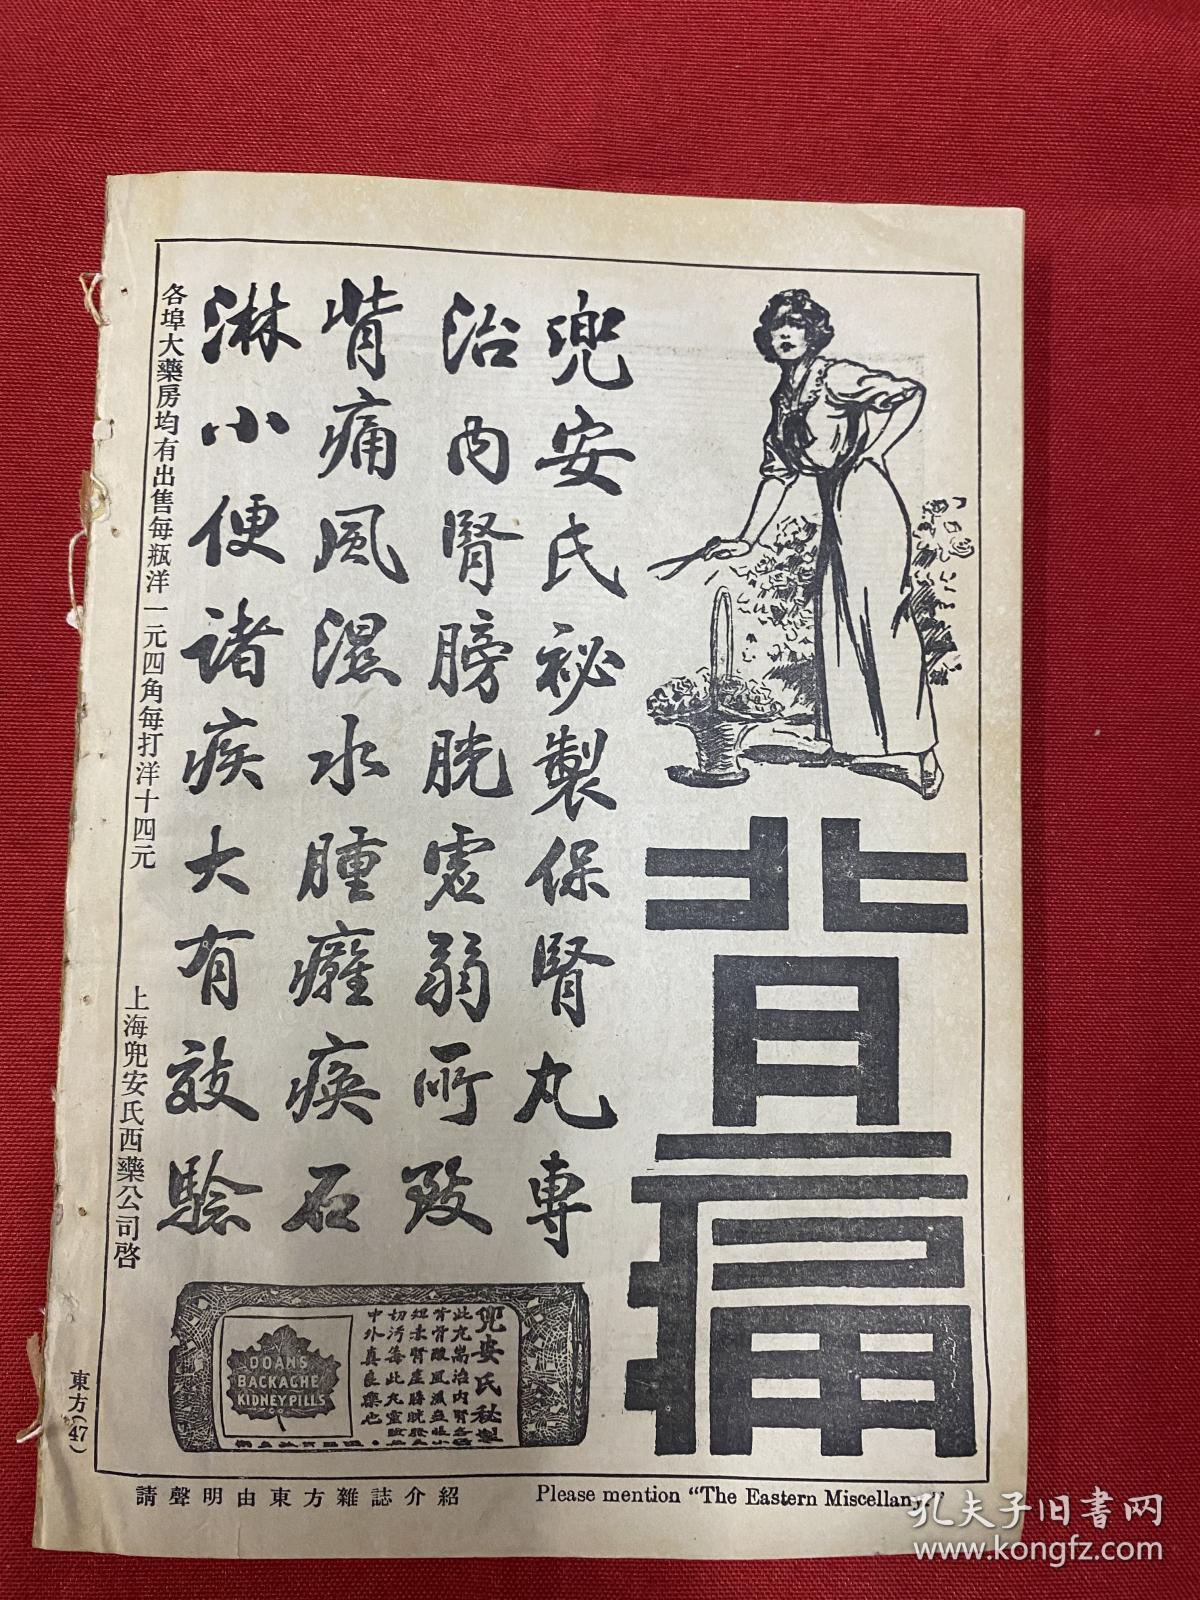 1919年（东方杂志）第16卷第4号，彩图，香烟广告，三色版泰西名画，中国政治革命不成就及社会革命不发生之原因，中国派驻海参崴军队，